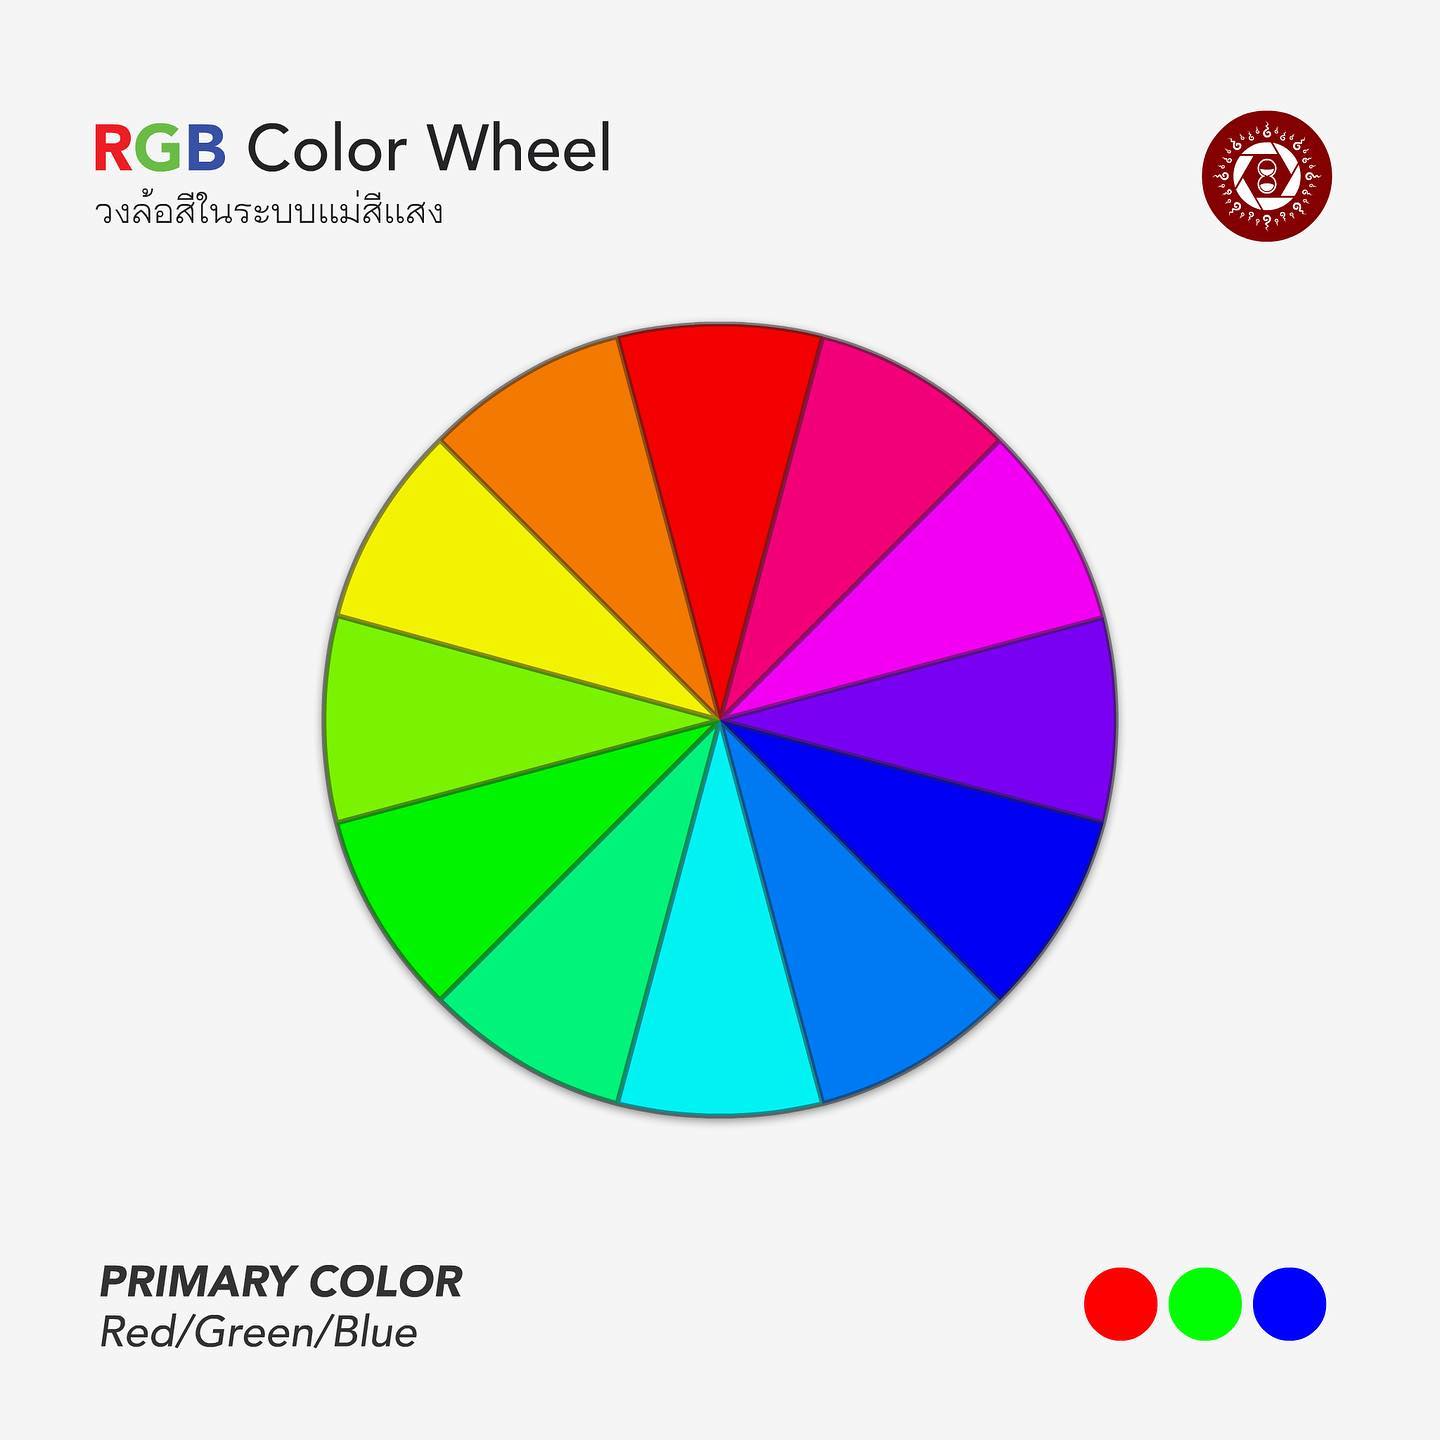 วงล้อสีในระบบแม่สีแสง
RGB Color Wheel
.
วงล้อสี RGB เกิดจากการผสมกันของแม่สีแสง 3 แม่สี ได้แก่ แดง, เขียว และน้ำเงิน สังเกตว่าแตกต่างจากระบบสี RYB ซึ่งเมื่อเป็นวงล้อสีแล้วคนส่วนมากรู้สึกคุ้นเคยมากกว่า
.
ระบบ RGB นิยมใช้ในการสร้างสื่อใดๆก็ตามที่แสดงผลบนหน้าจอทุกชนิด อย่างที่เว็บไซต์ Canva เนื้อหาที่ใช้สอนผลิตสื่อก็อ้างอิงระบบสี RGB ครับ
.
สำหรับช่างภาพอย่างเราๆ ท่านก็ลองพิจารณาดูว่าจะเลือกใช้สีในภาพโดยอ้างอิงระบบสีที่รวมตัวกันแบบบวกอย่าง RGB หรือรวมตัวกันแบบลบอย่าง RYB 
.
ไม่แน่ว่าอาจเกิดการสร้างสรรค์ใหม่ๆกับงานก็ได้นะ
━━━━━━━━━━━━━━━━━
เรียนถ่ายภาพและตกแต่งภาพถ่ายกับเรา
Official Site : https://www.dozzdiy.com
Instagram : https://www.instagram.com/dozzdiy/
TikTok : https://www.tiktok.com/@dozzdiy
500px : https://500px.com/p/dozzdiy
━━━━━━━━━━━━━━━━━
#สอนถ่ายภาพ #แต่งรูปคุมโทน #เรียนแต่งรูป #ทฤษฎีสี #ศิลปะ